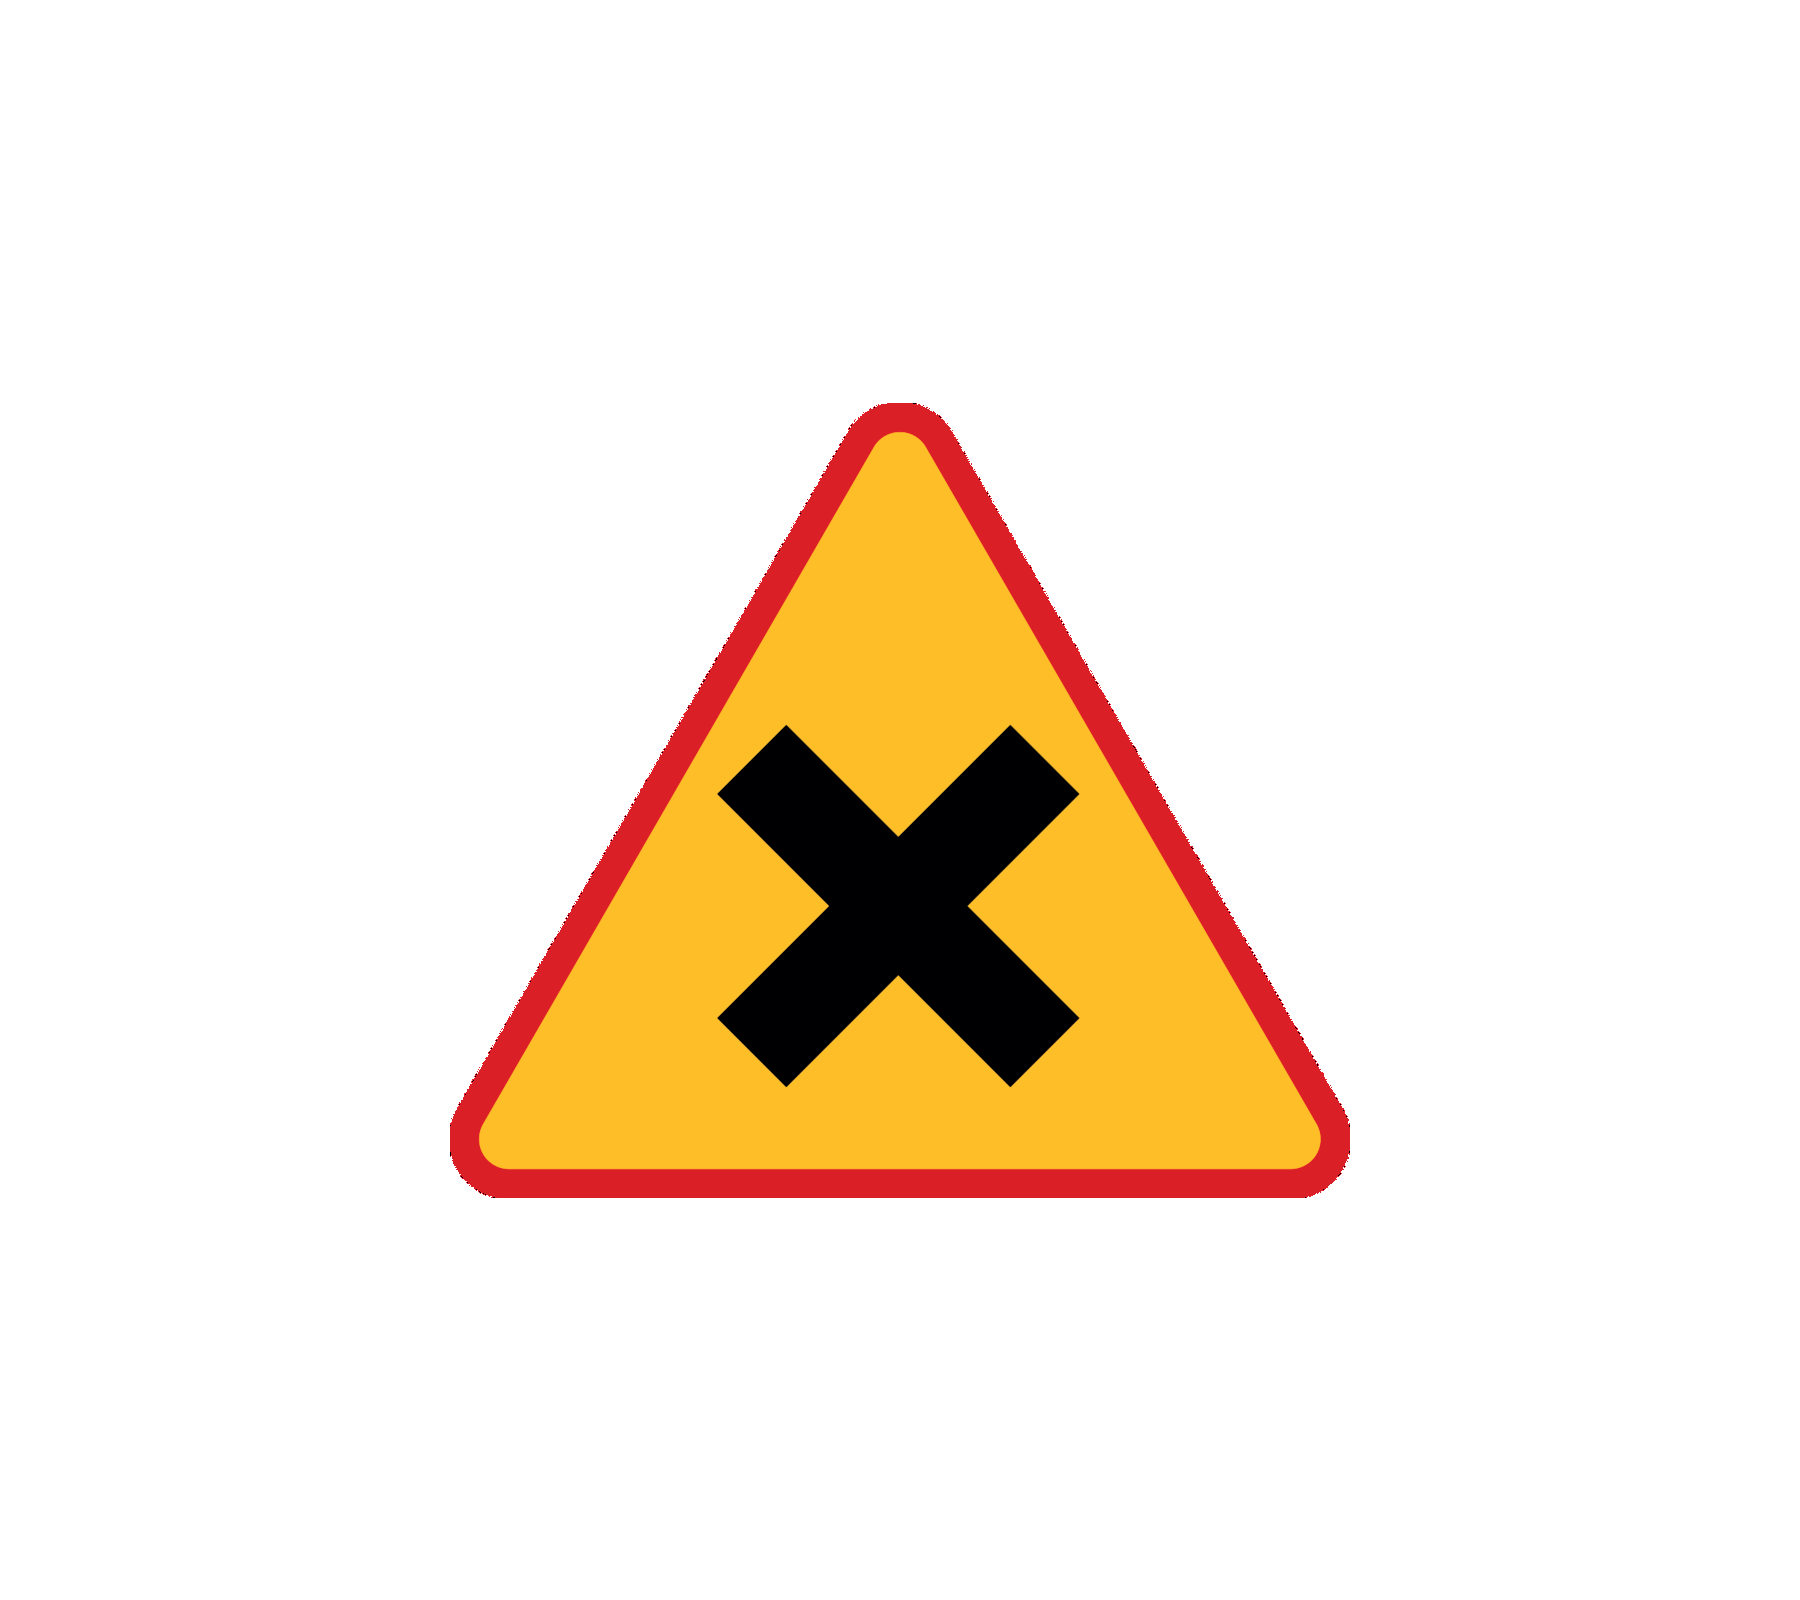 Który znak informuje o skrzyżowaniu dróg równorzędnych?